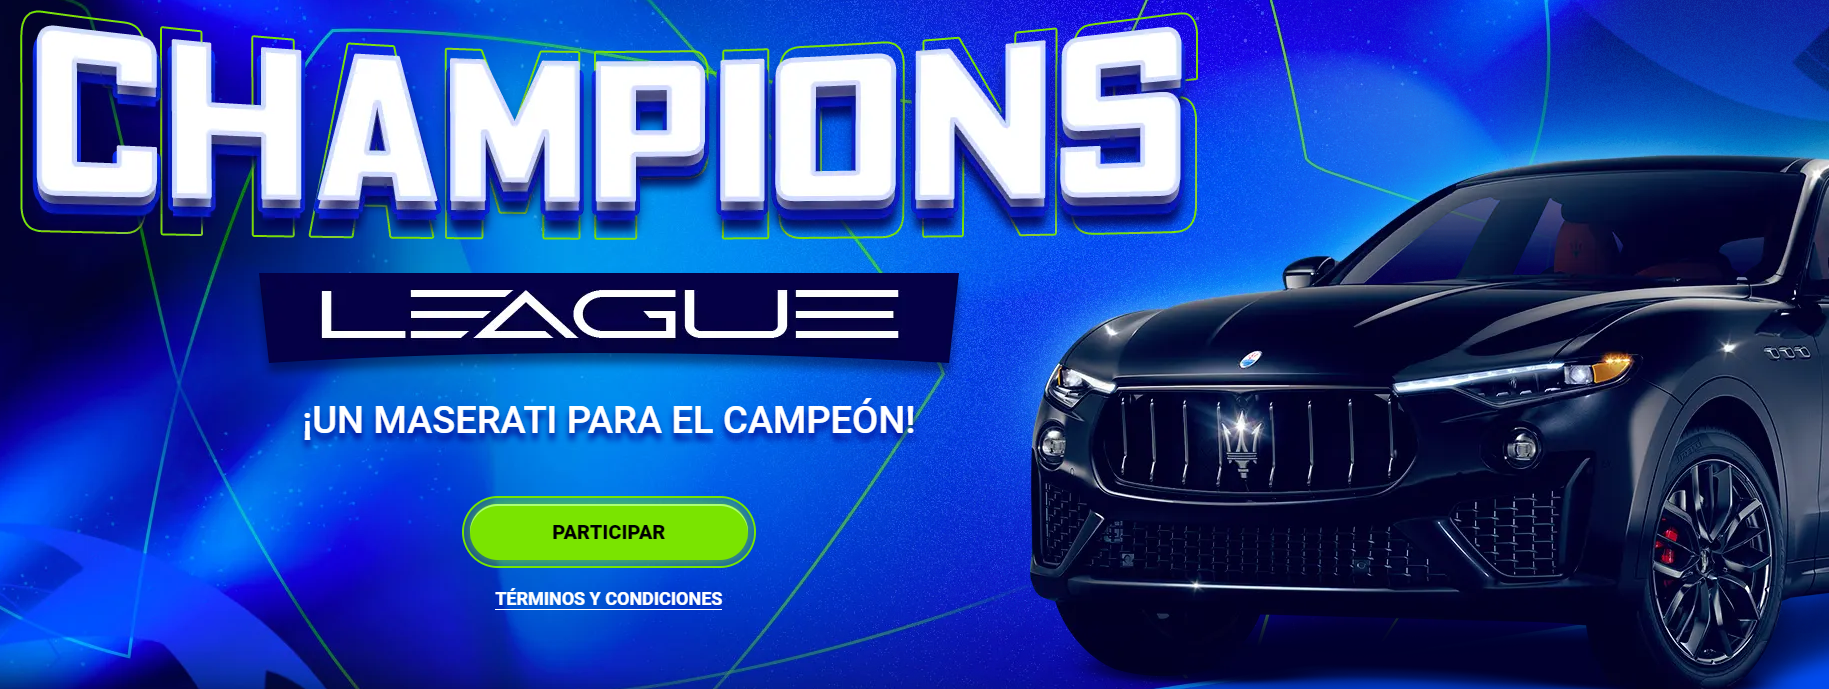 Un screenshot sobre la promoción Champions League que ofrece 1xBet